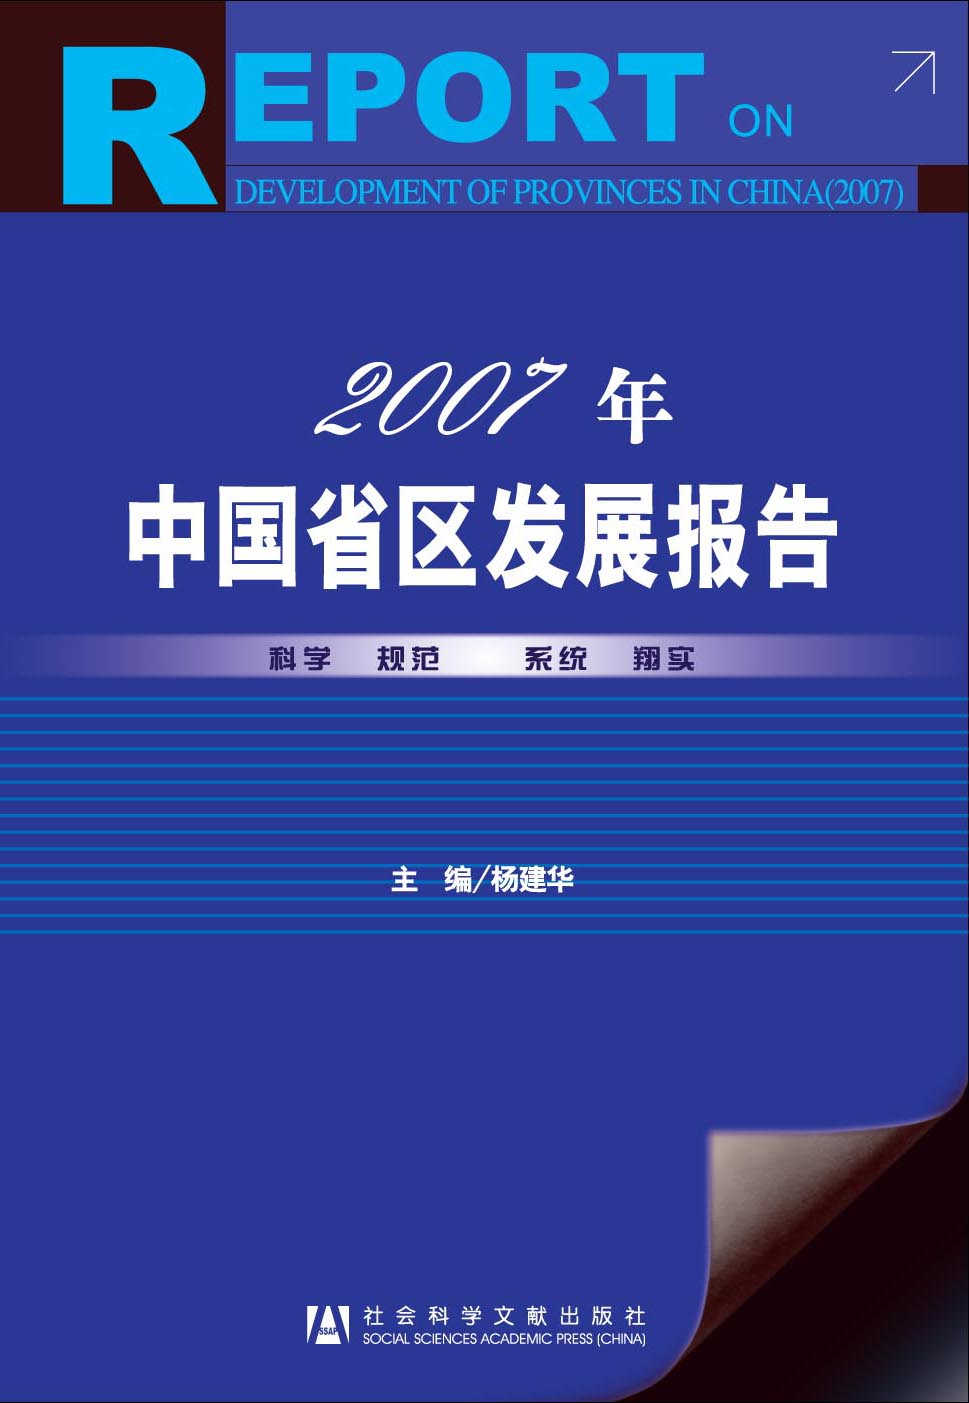 2007年中国省区发展报告